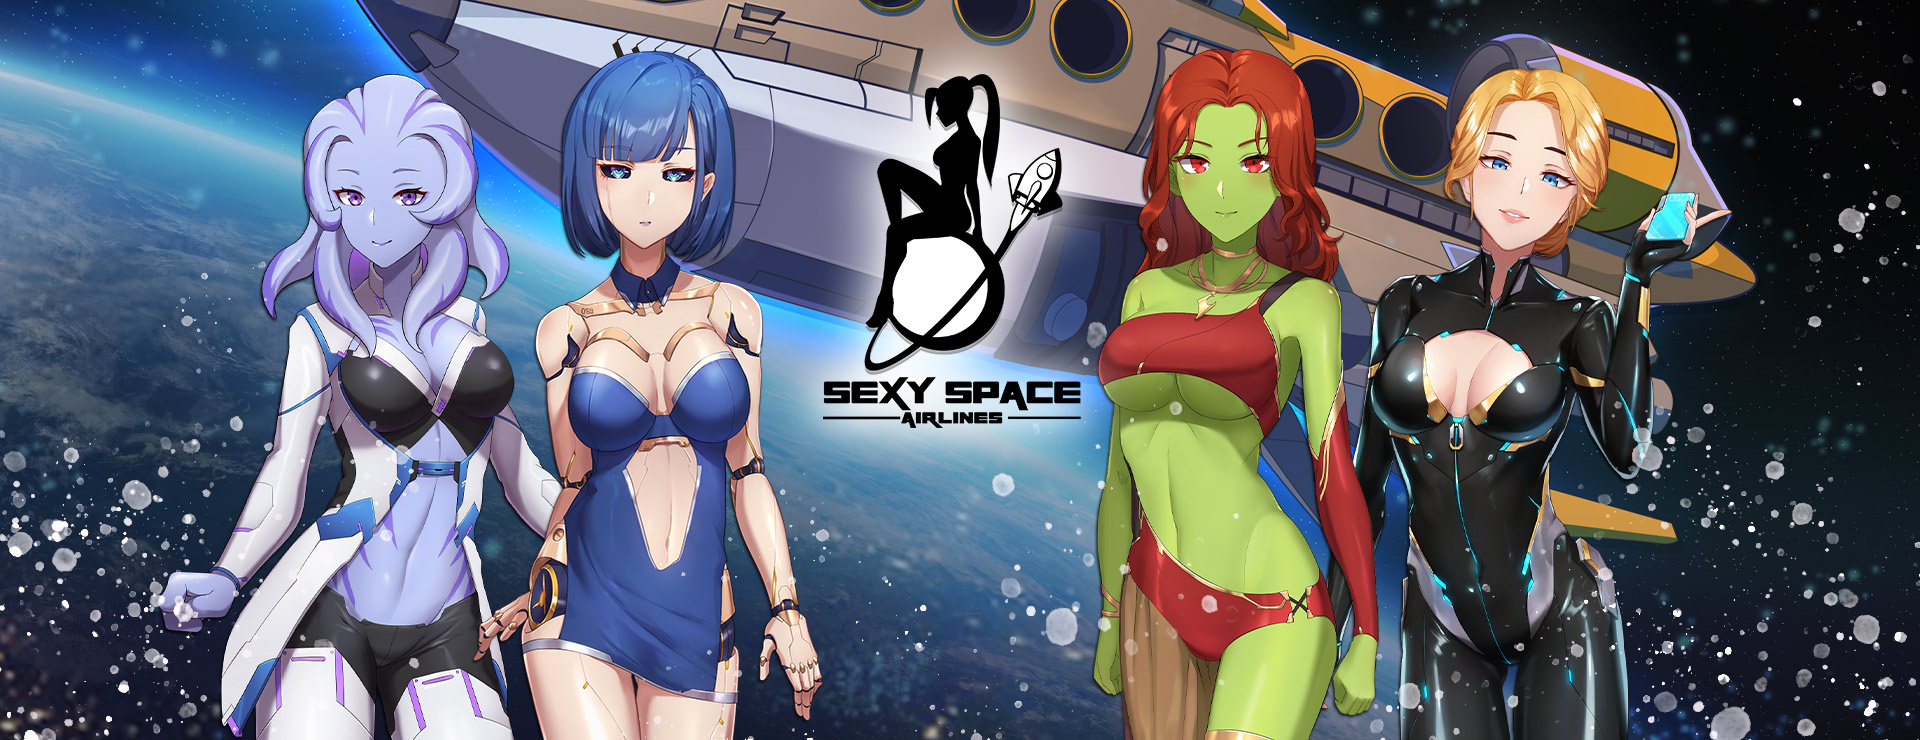 Sexy Space Airlines Game - Przygodowa akcji Gra